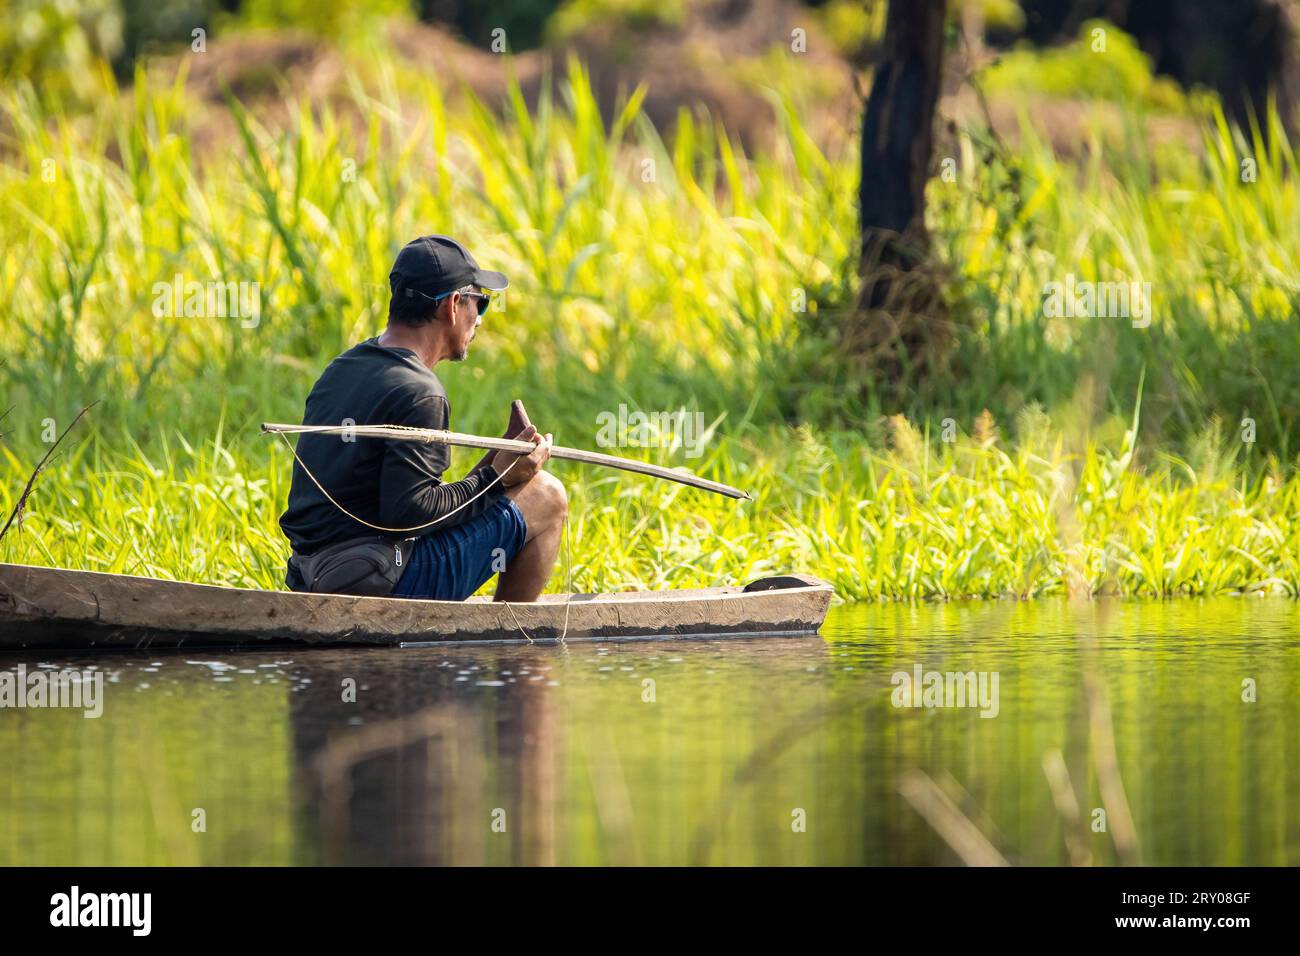 Le peuple amazonien traditionnel proue la pêche à la lance en Amérique du Sud Banque D'Images